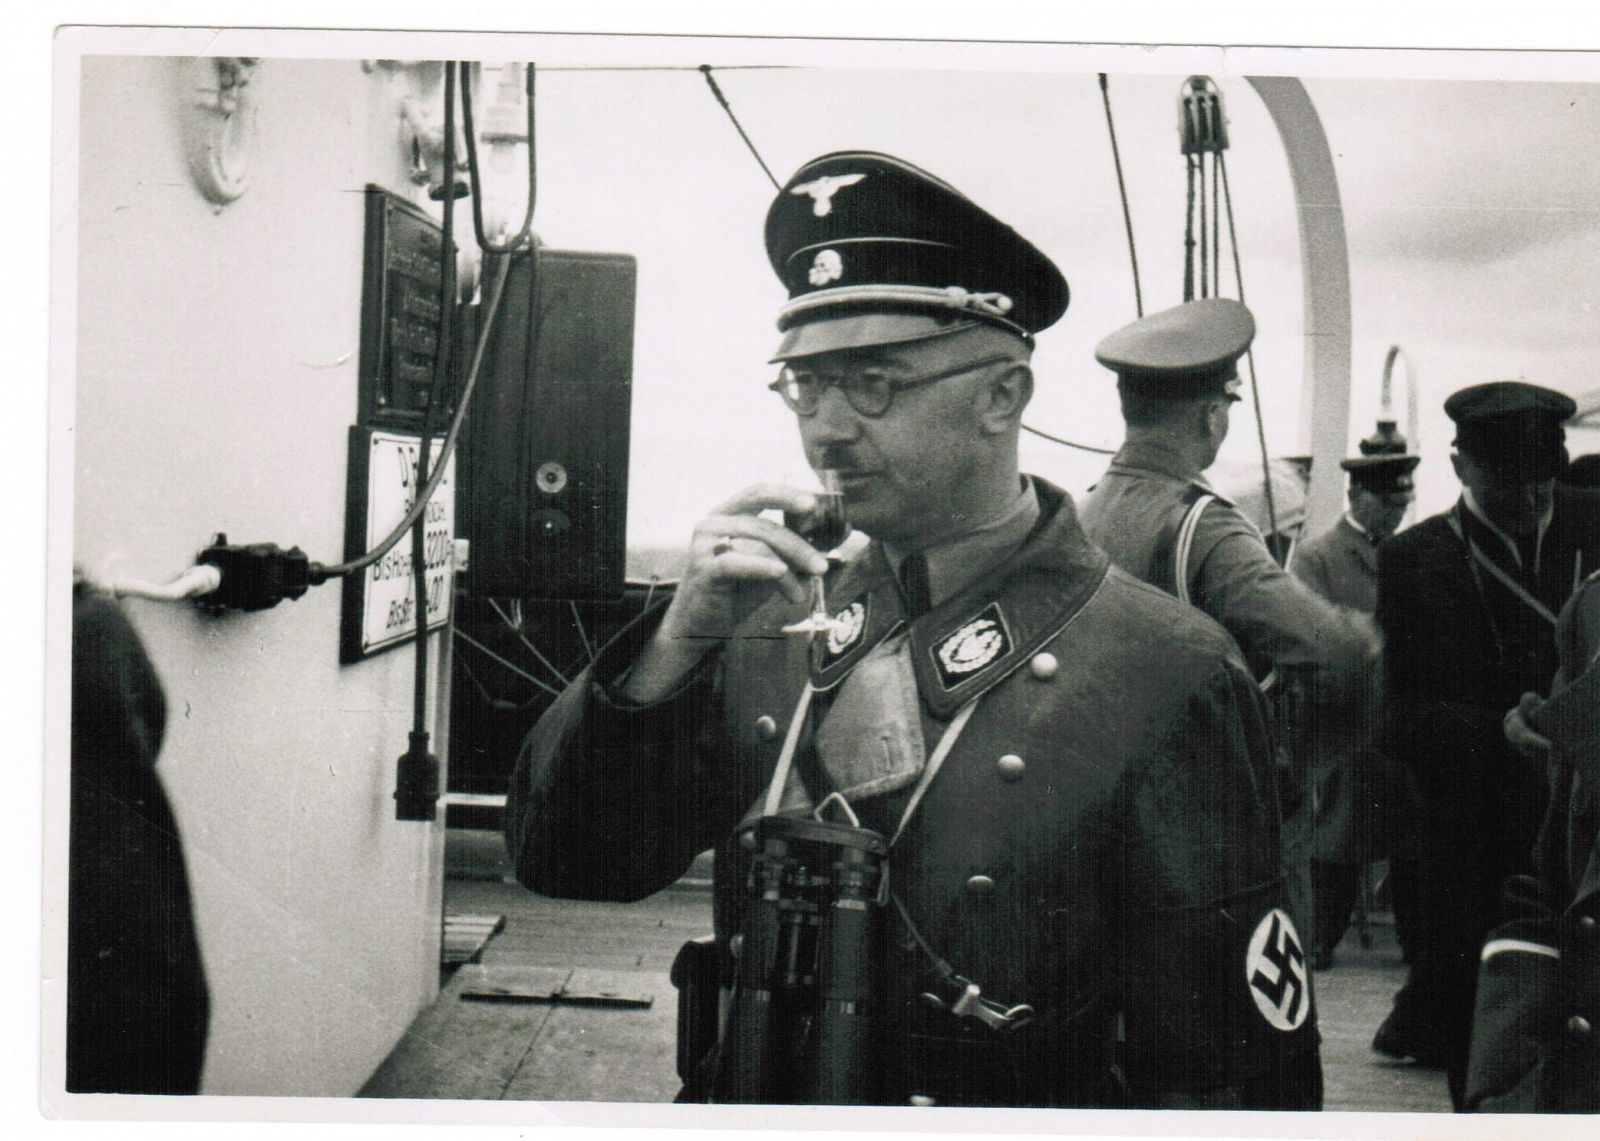 Una de las fotografías inéditas de Himmler que han salido a la luz, publicada por Die Welt